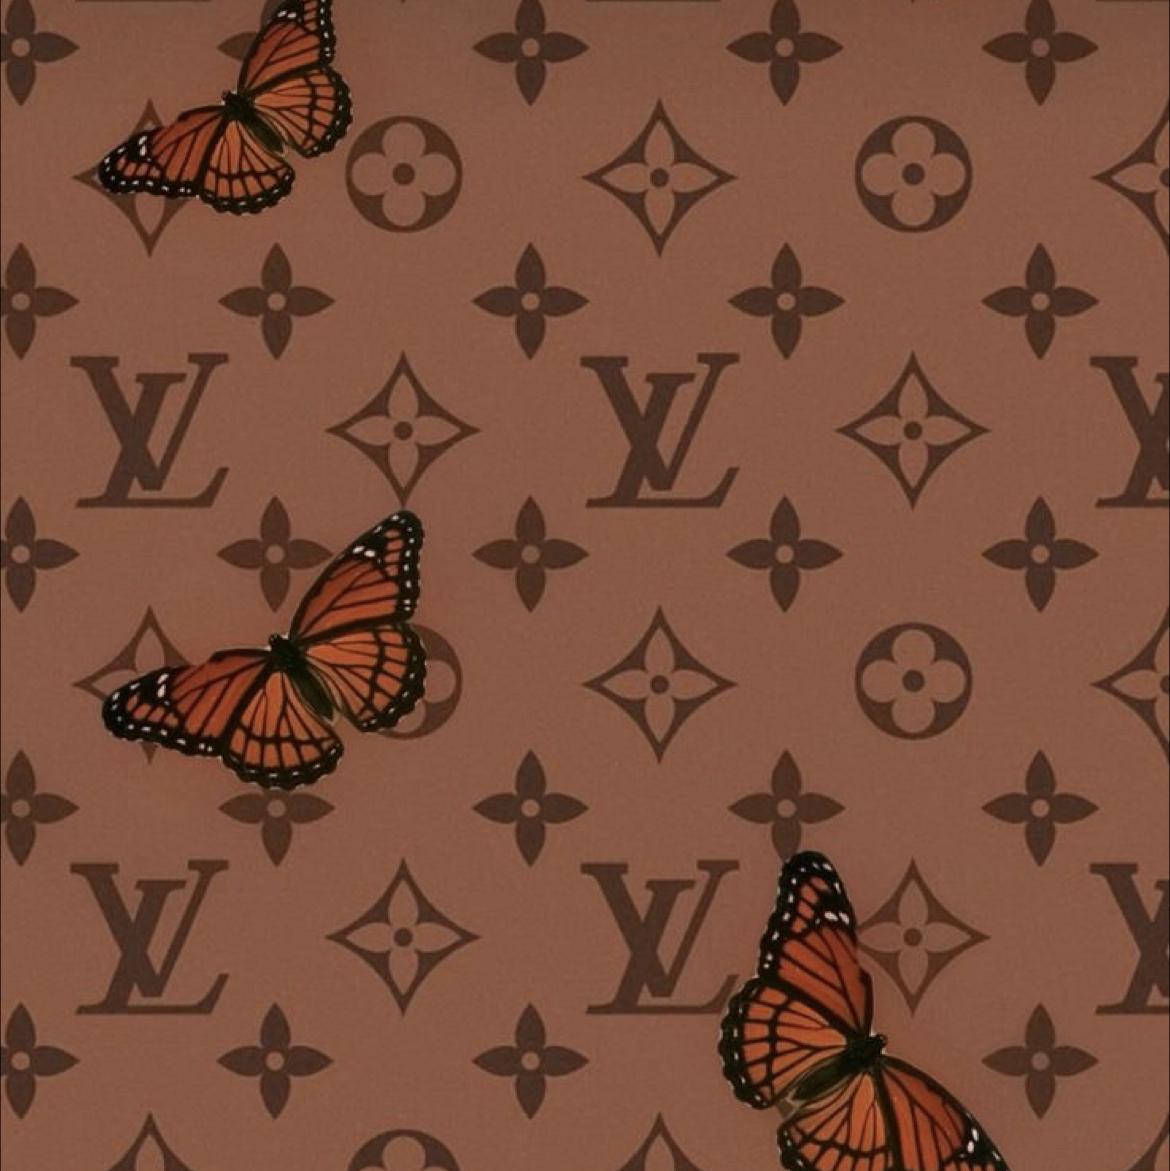 vuitton butterfly wallpaper